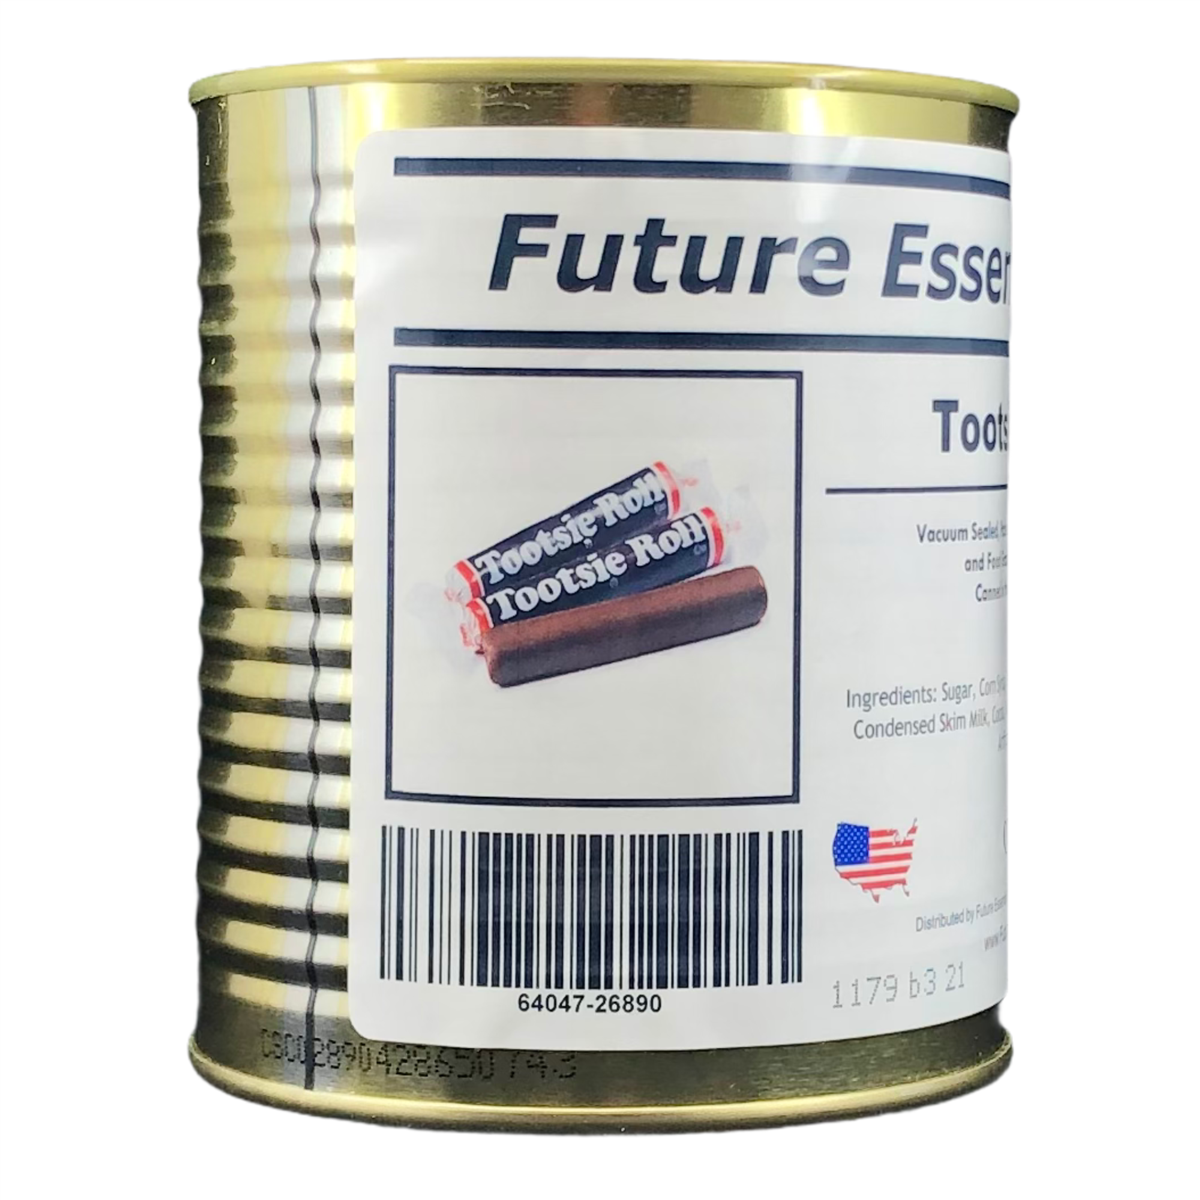 Future Essentials Fifty (50) Tootsie Rolls